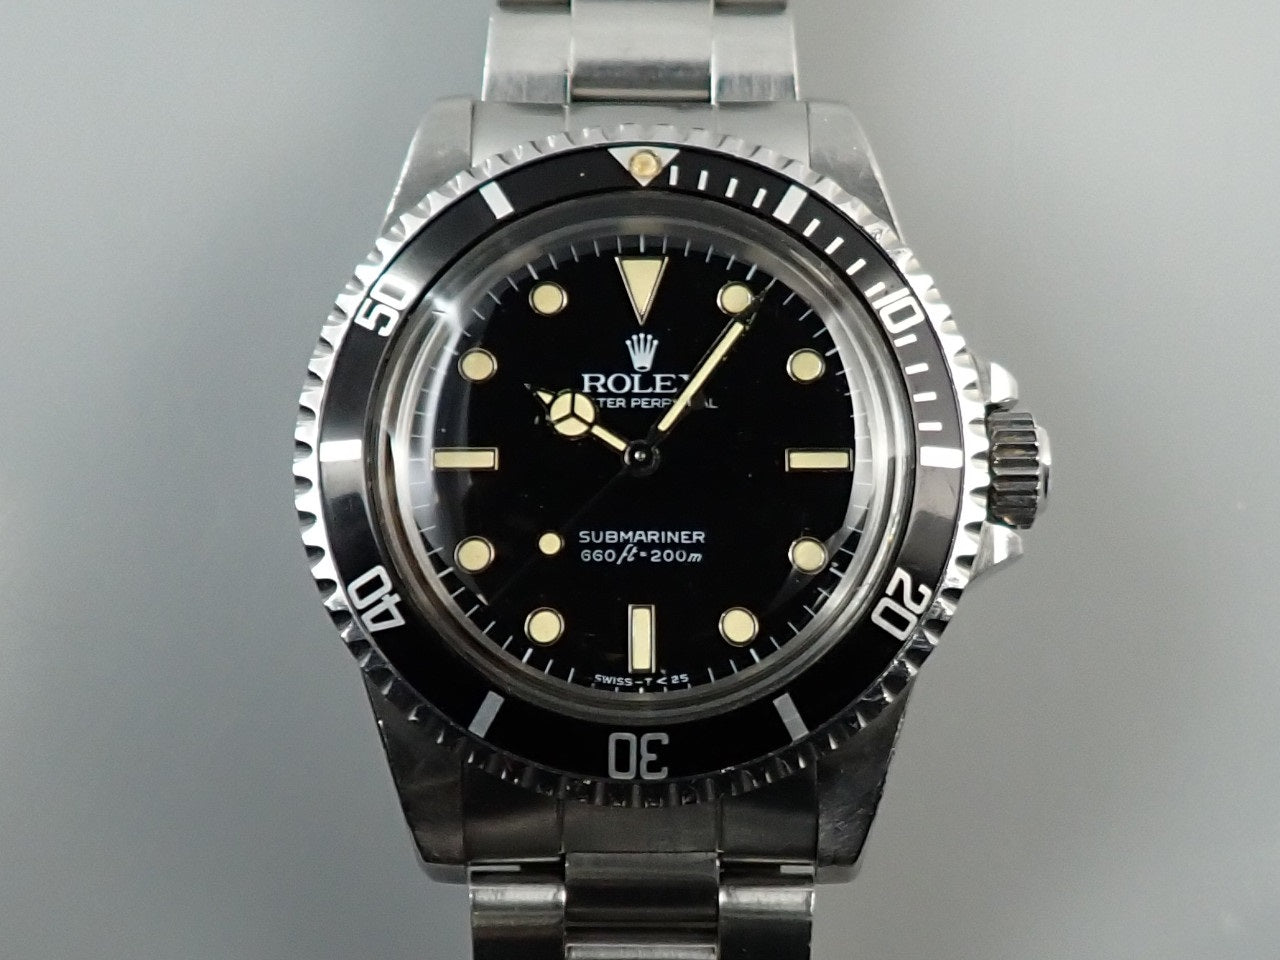 Rolex Submariner &lt;Warranty, Box, etc.&gt;